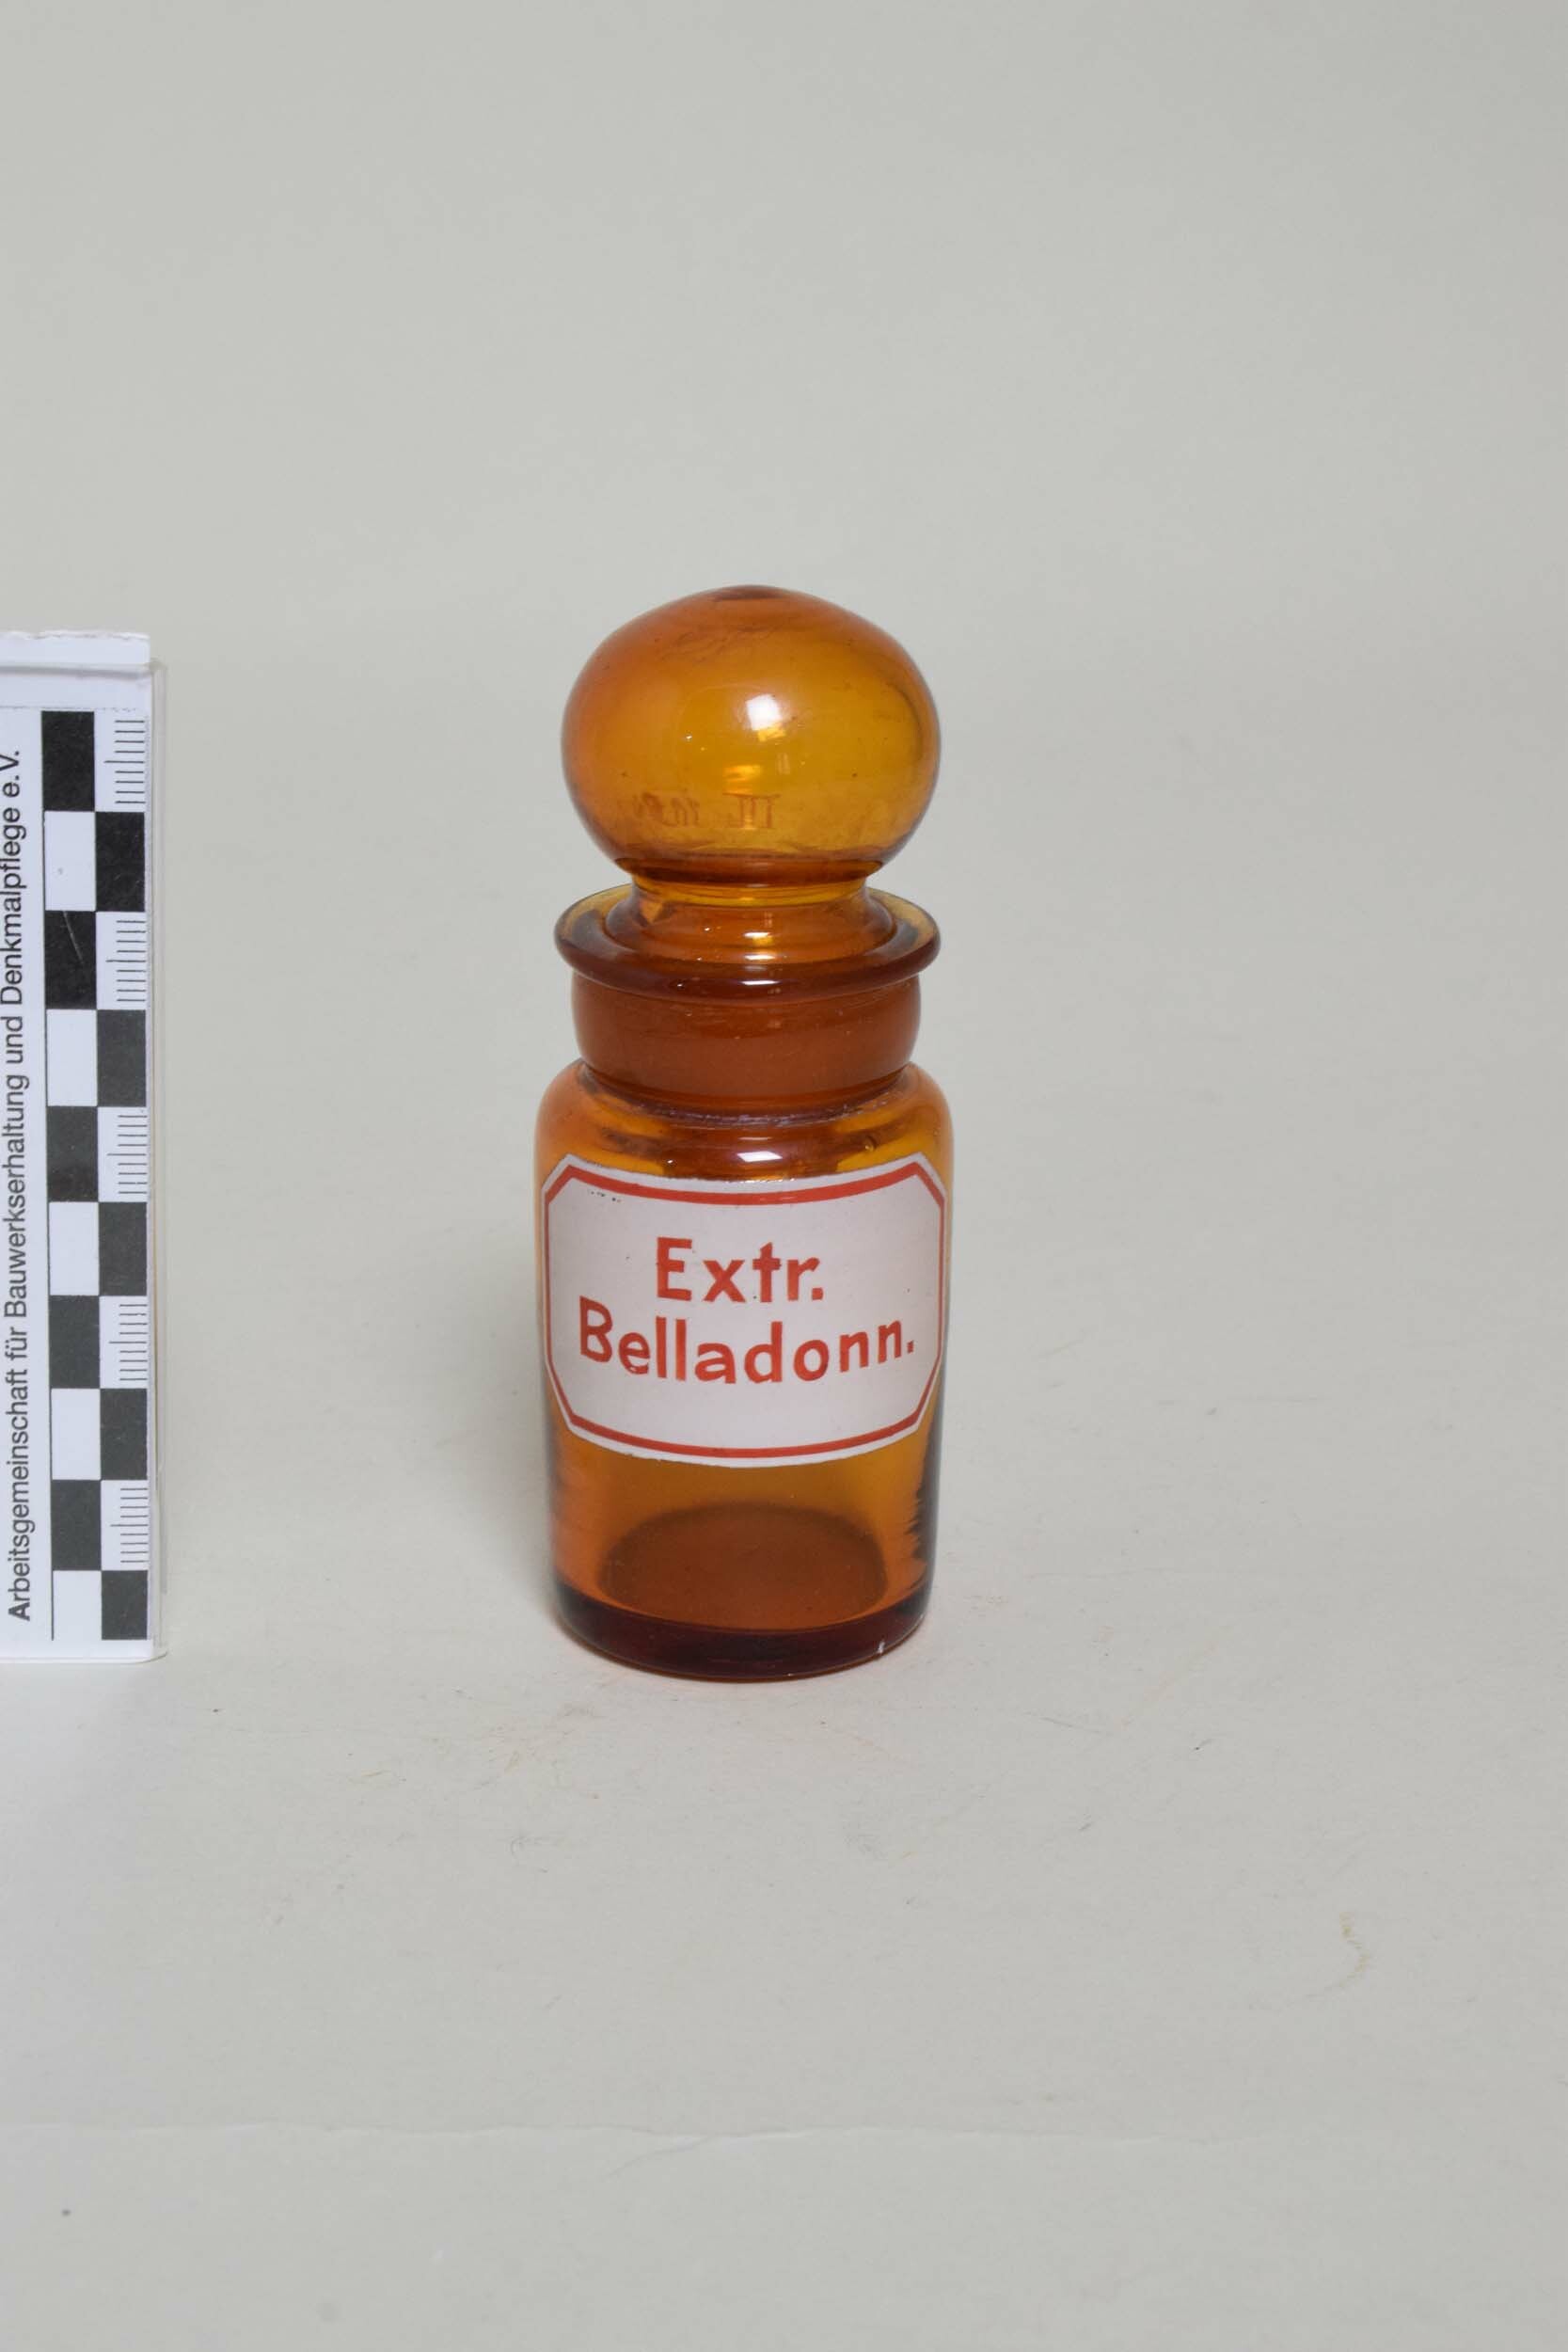 Apothekenflasche "Extr. Belladonn." (Tollkirschenblätter-Extrakt) (Heimatmuseum Dohna CC BY-NC-SA)